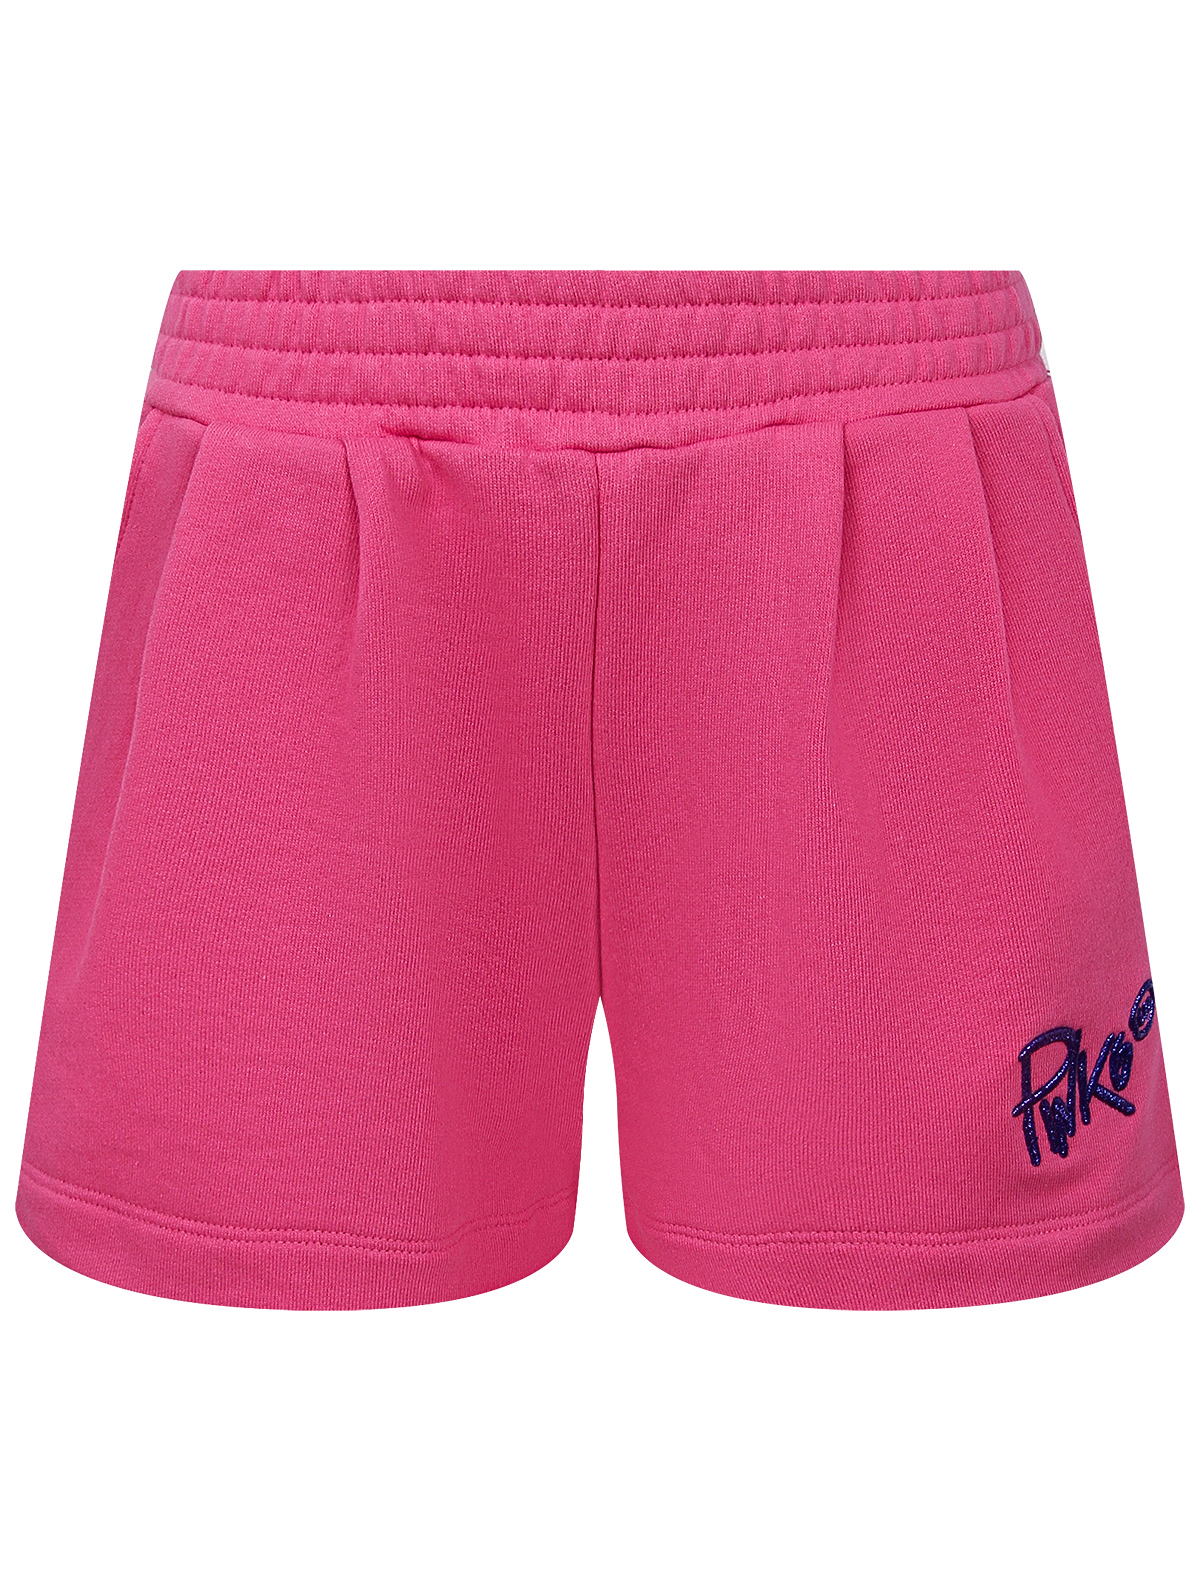 шорты pinko для девочки, розовые